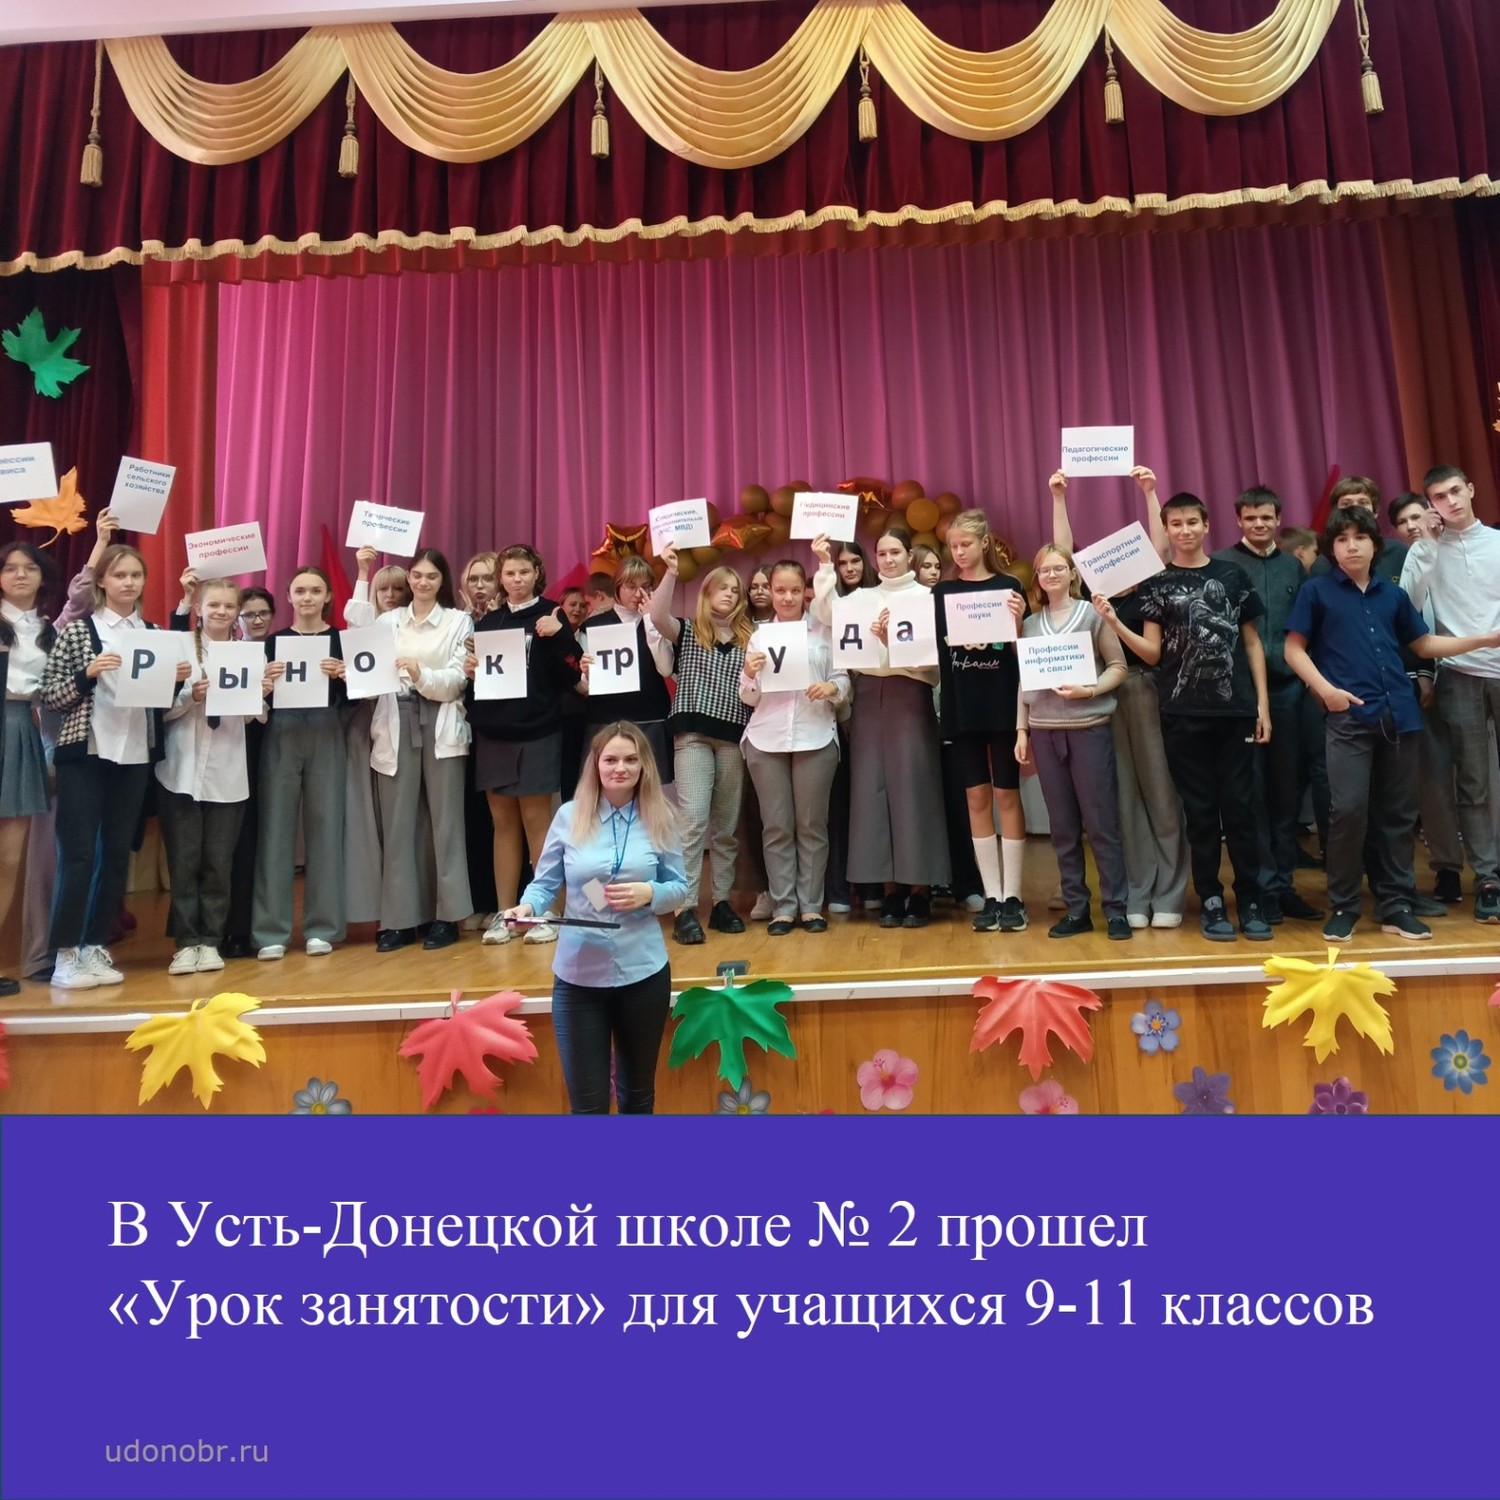 В Усть-Донецкой школе №2 прошел «Урок занятости» для учащихся 9-11 классов